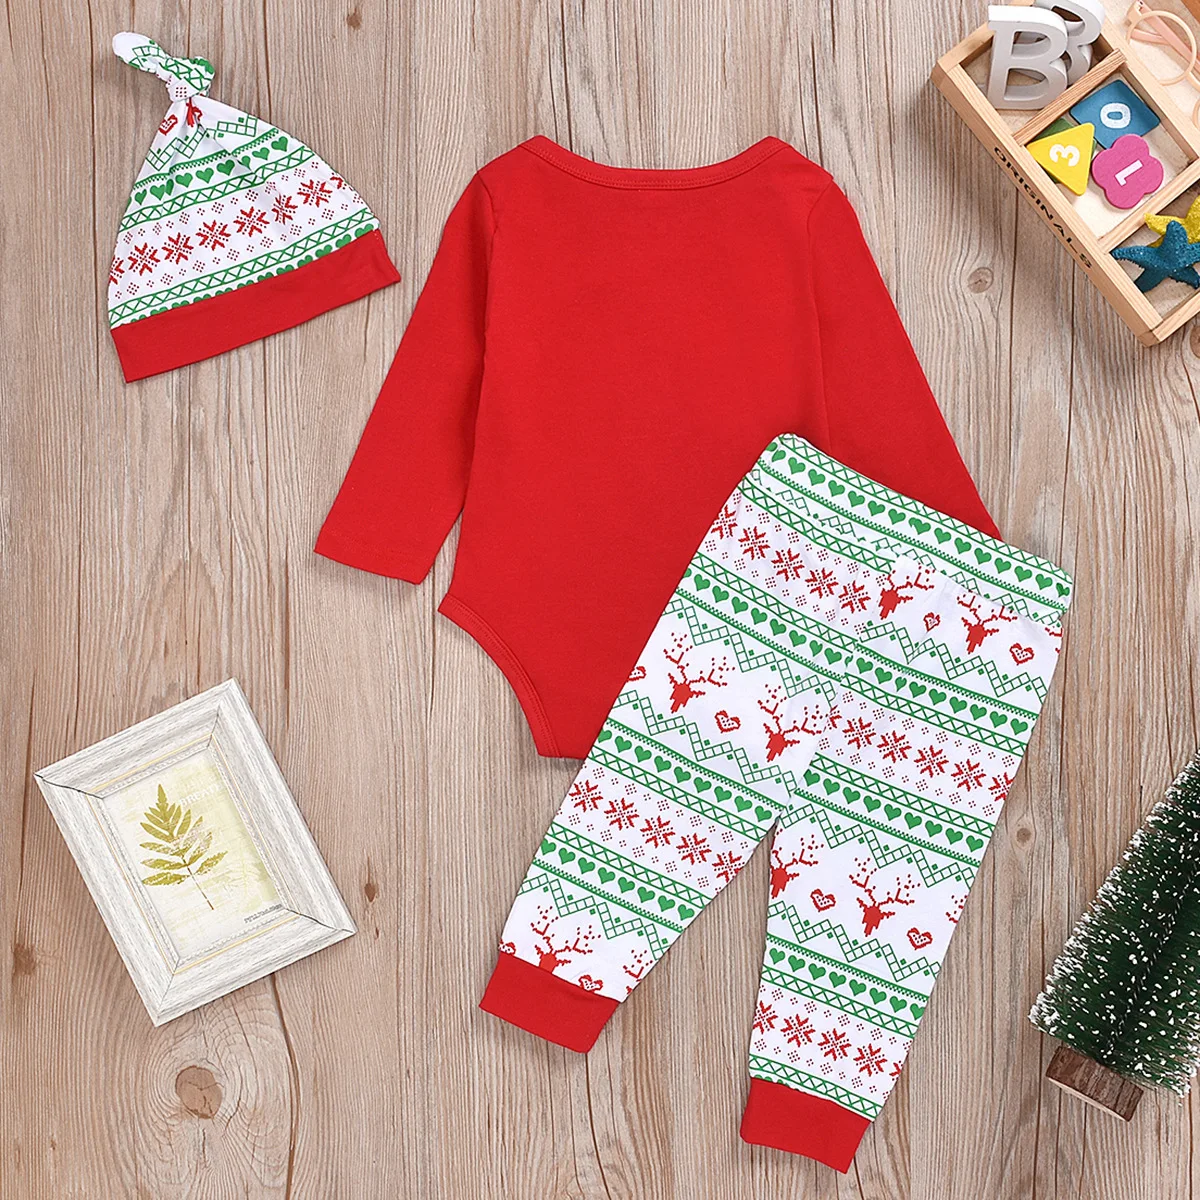 Комплект из 3 предметов, одежда для девочек с длинными рукавами и надписью «Explosion Money» на Рождество и деньги, цельнокроеная одежда для детей, детская одежда на Рождество